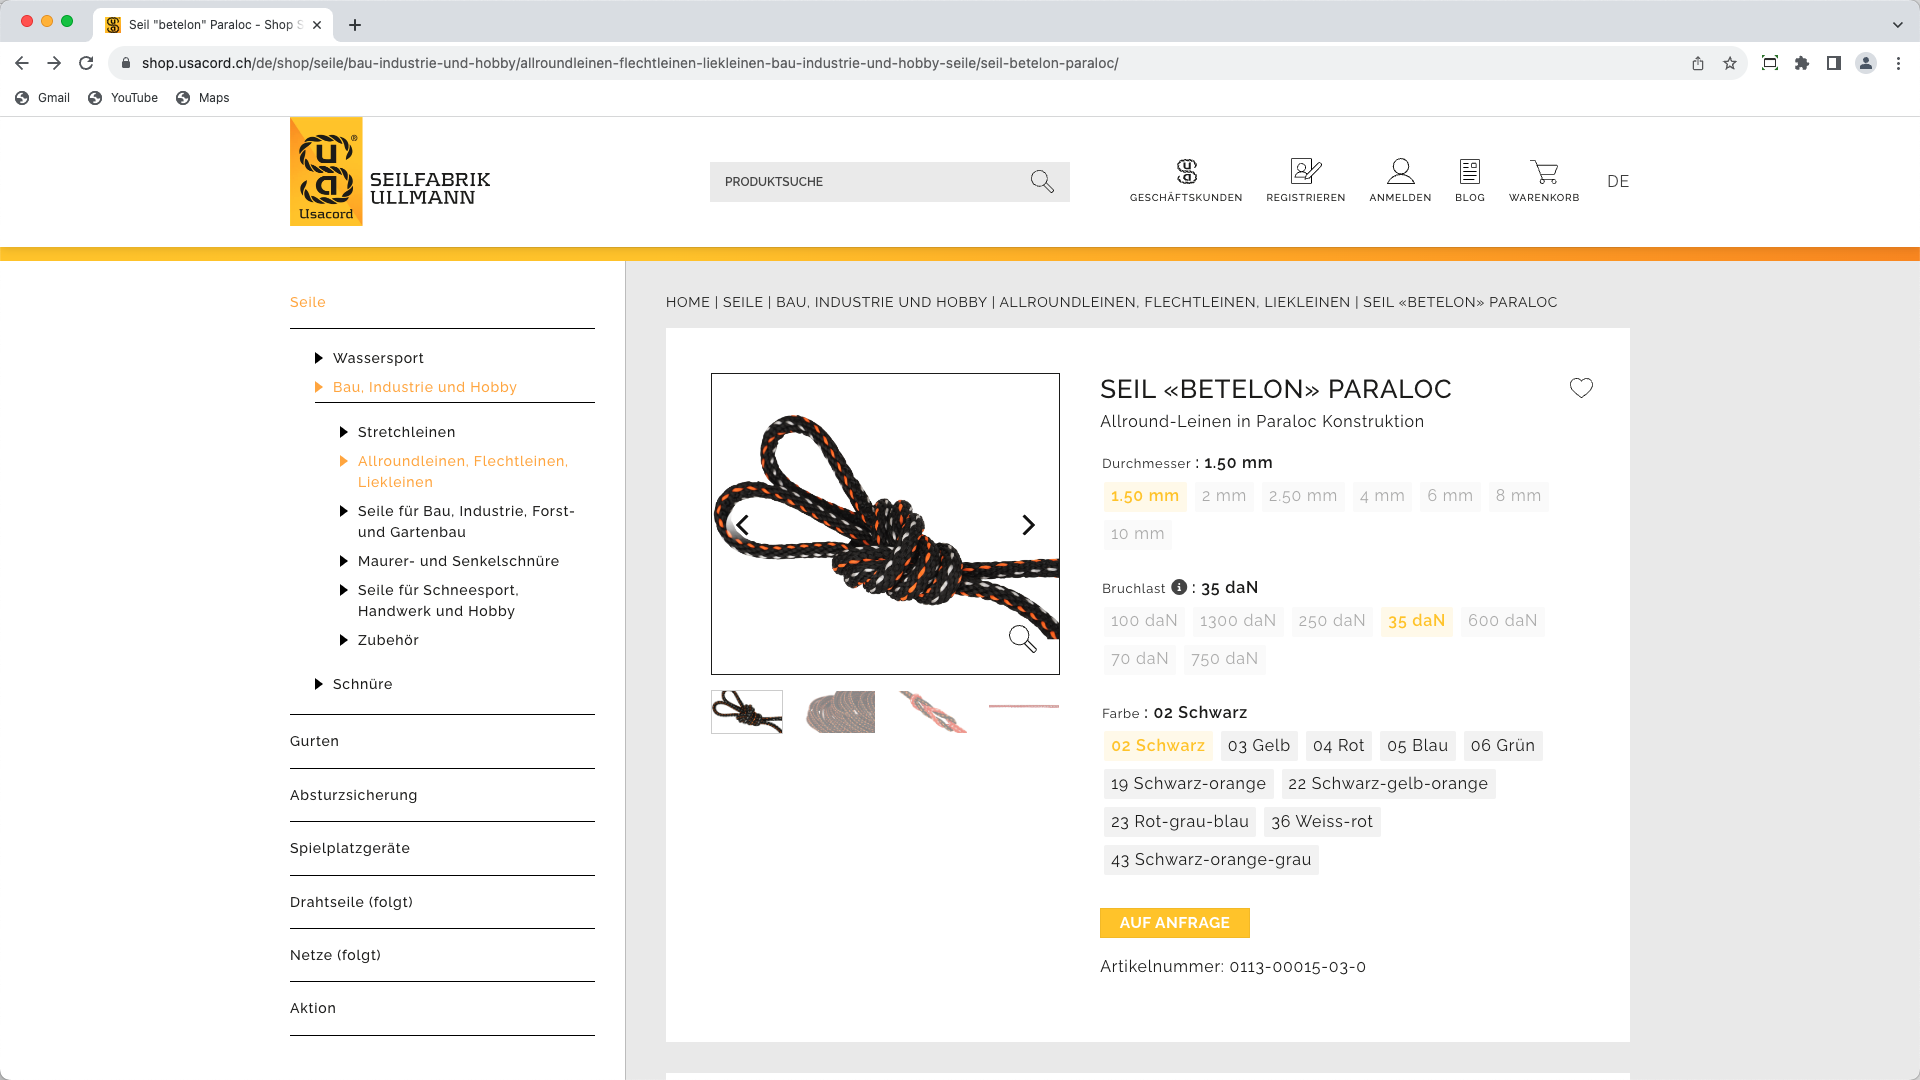 Neuer Online-Shop für Seile: shop.usacord.ch